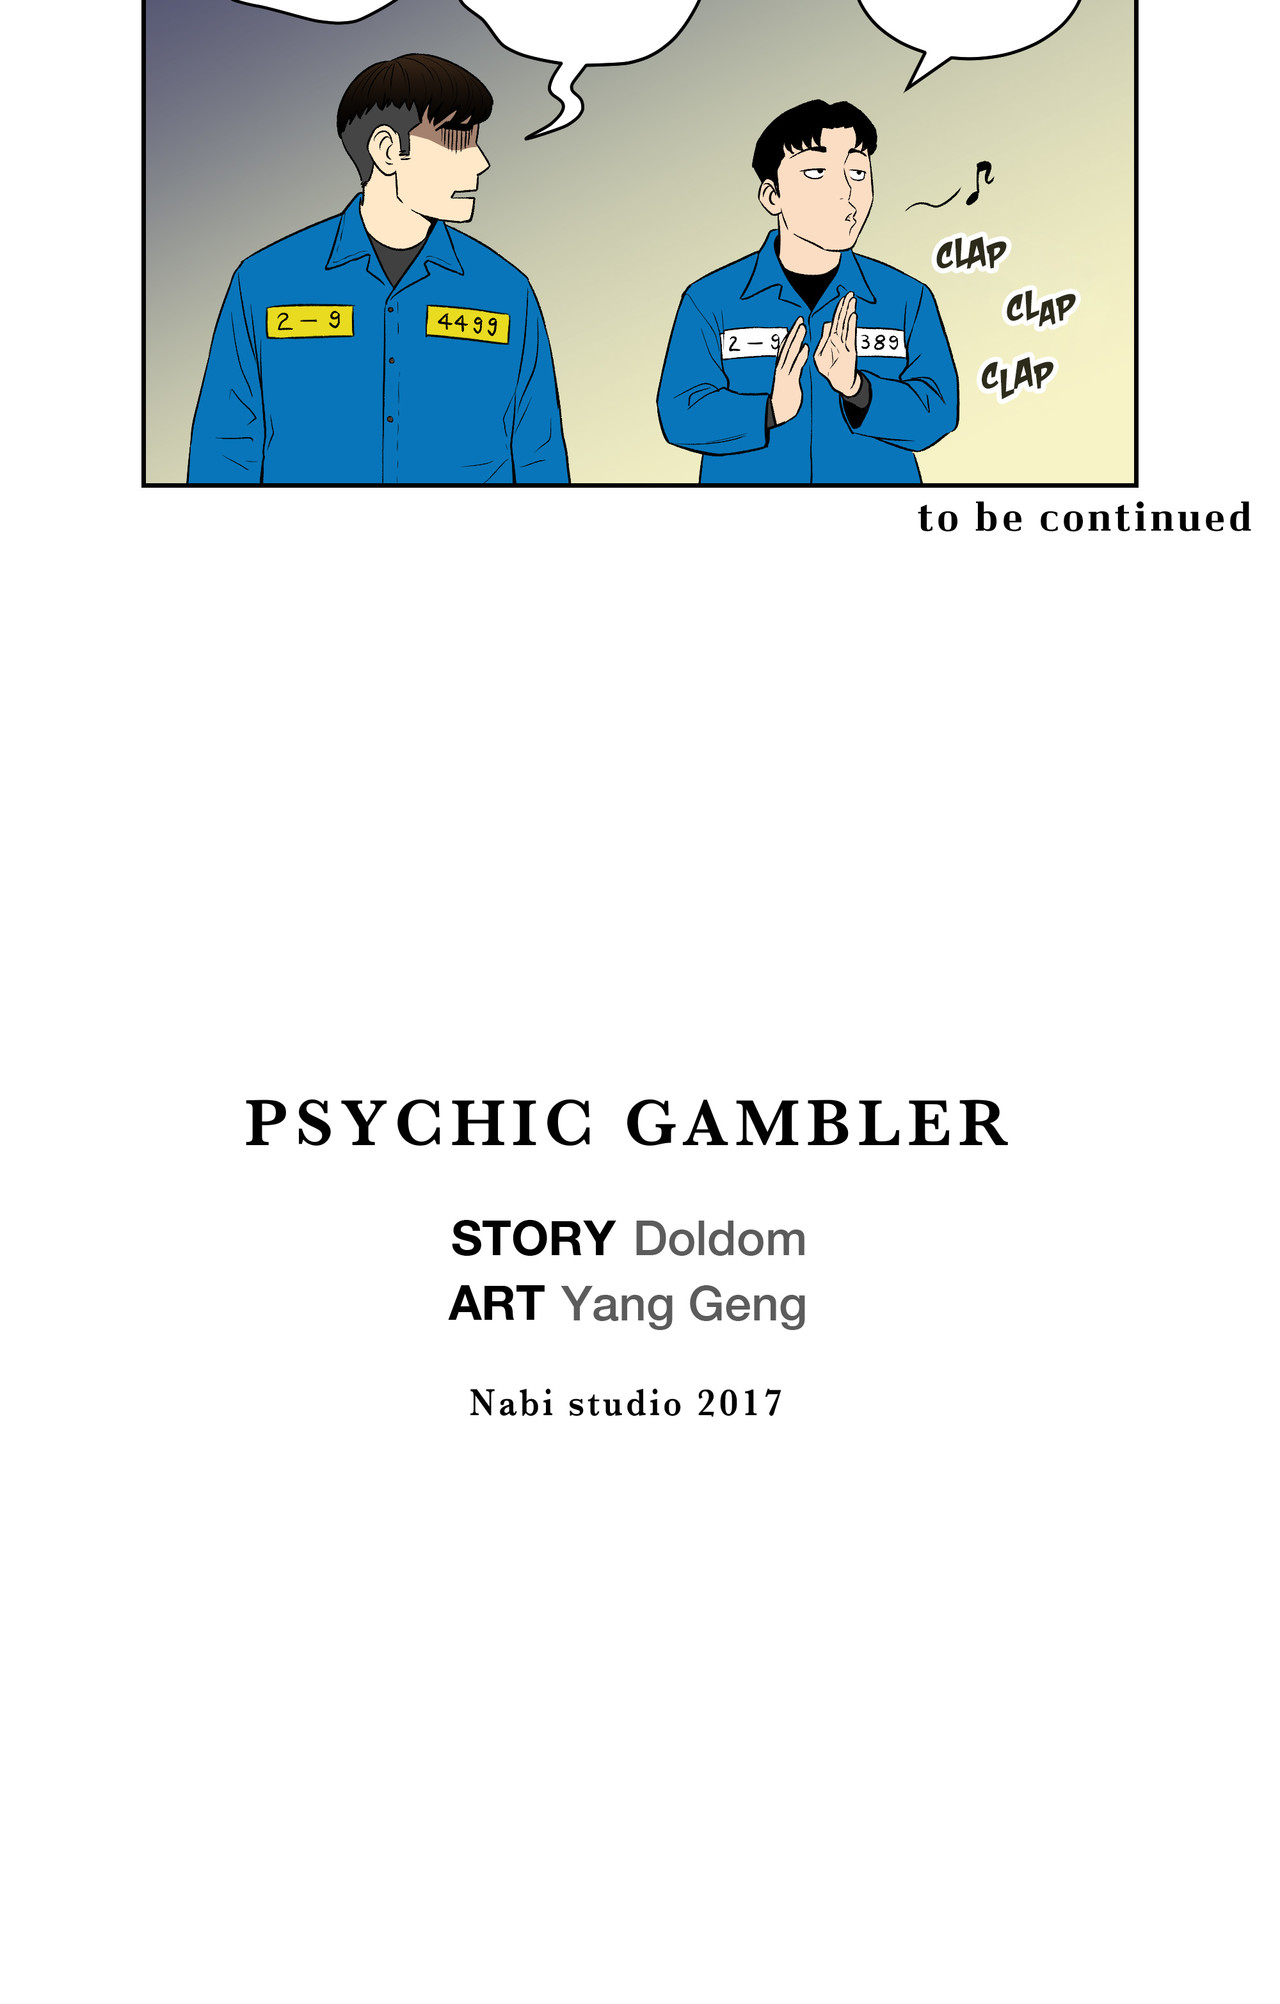 Psychic Gambler: Betting Man image